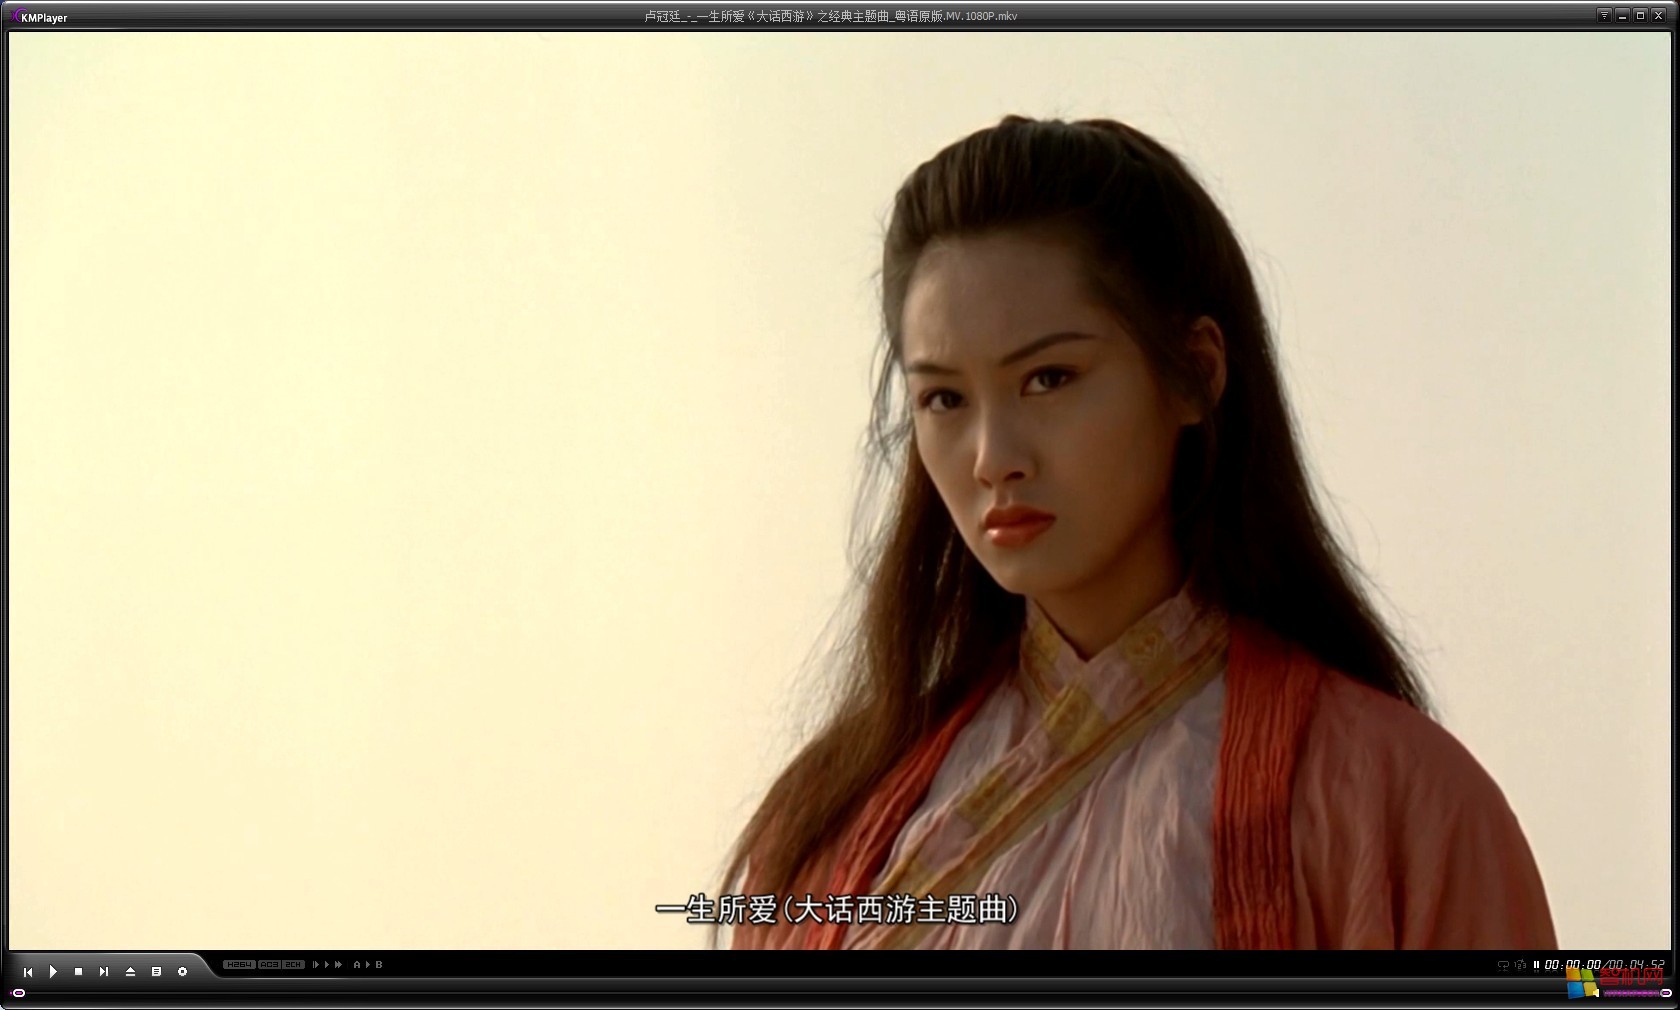 《逃学威龙2》,1995年在《大话西游》里饰演的紫霞仙子惊艳万千观众